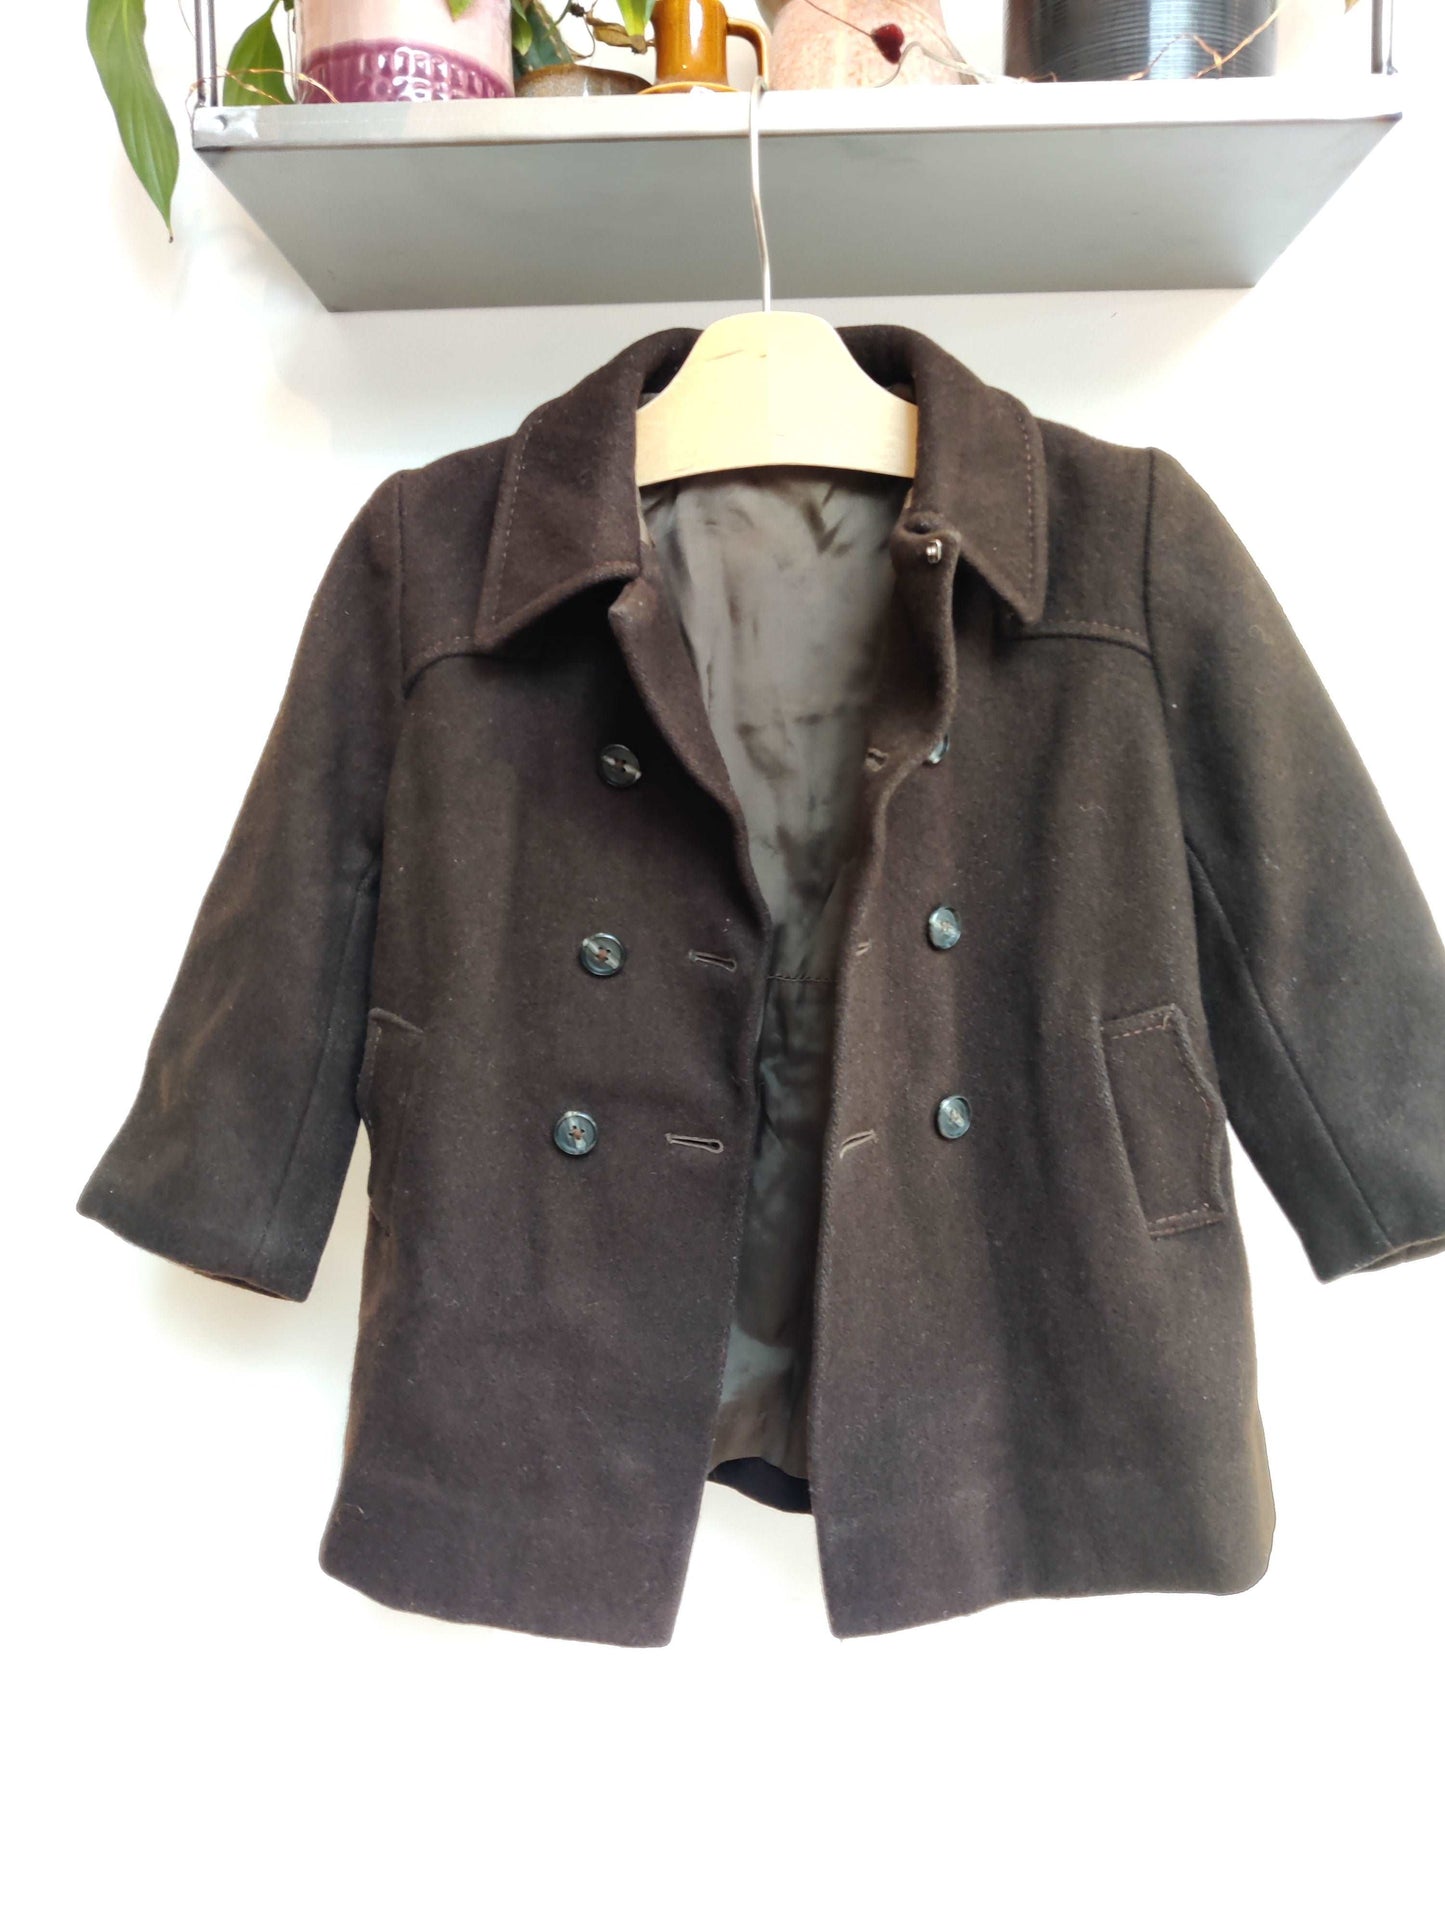 Chocolate brown vintage wool jacket age 3.